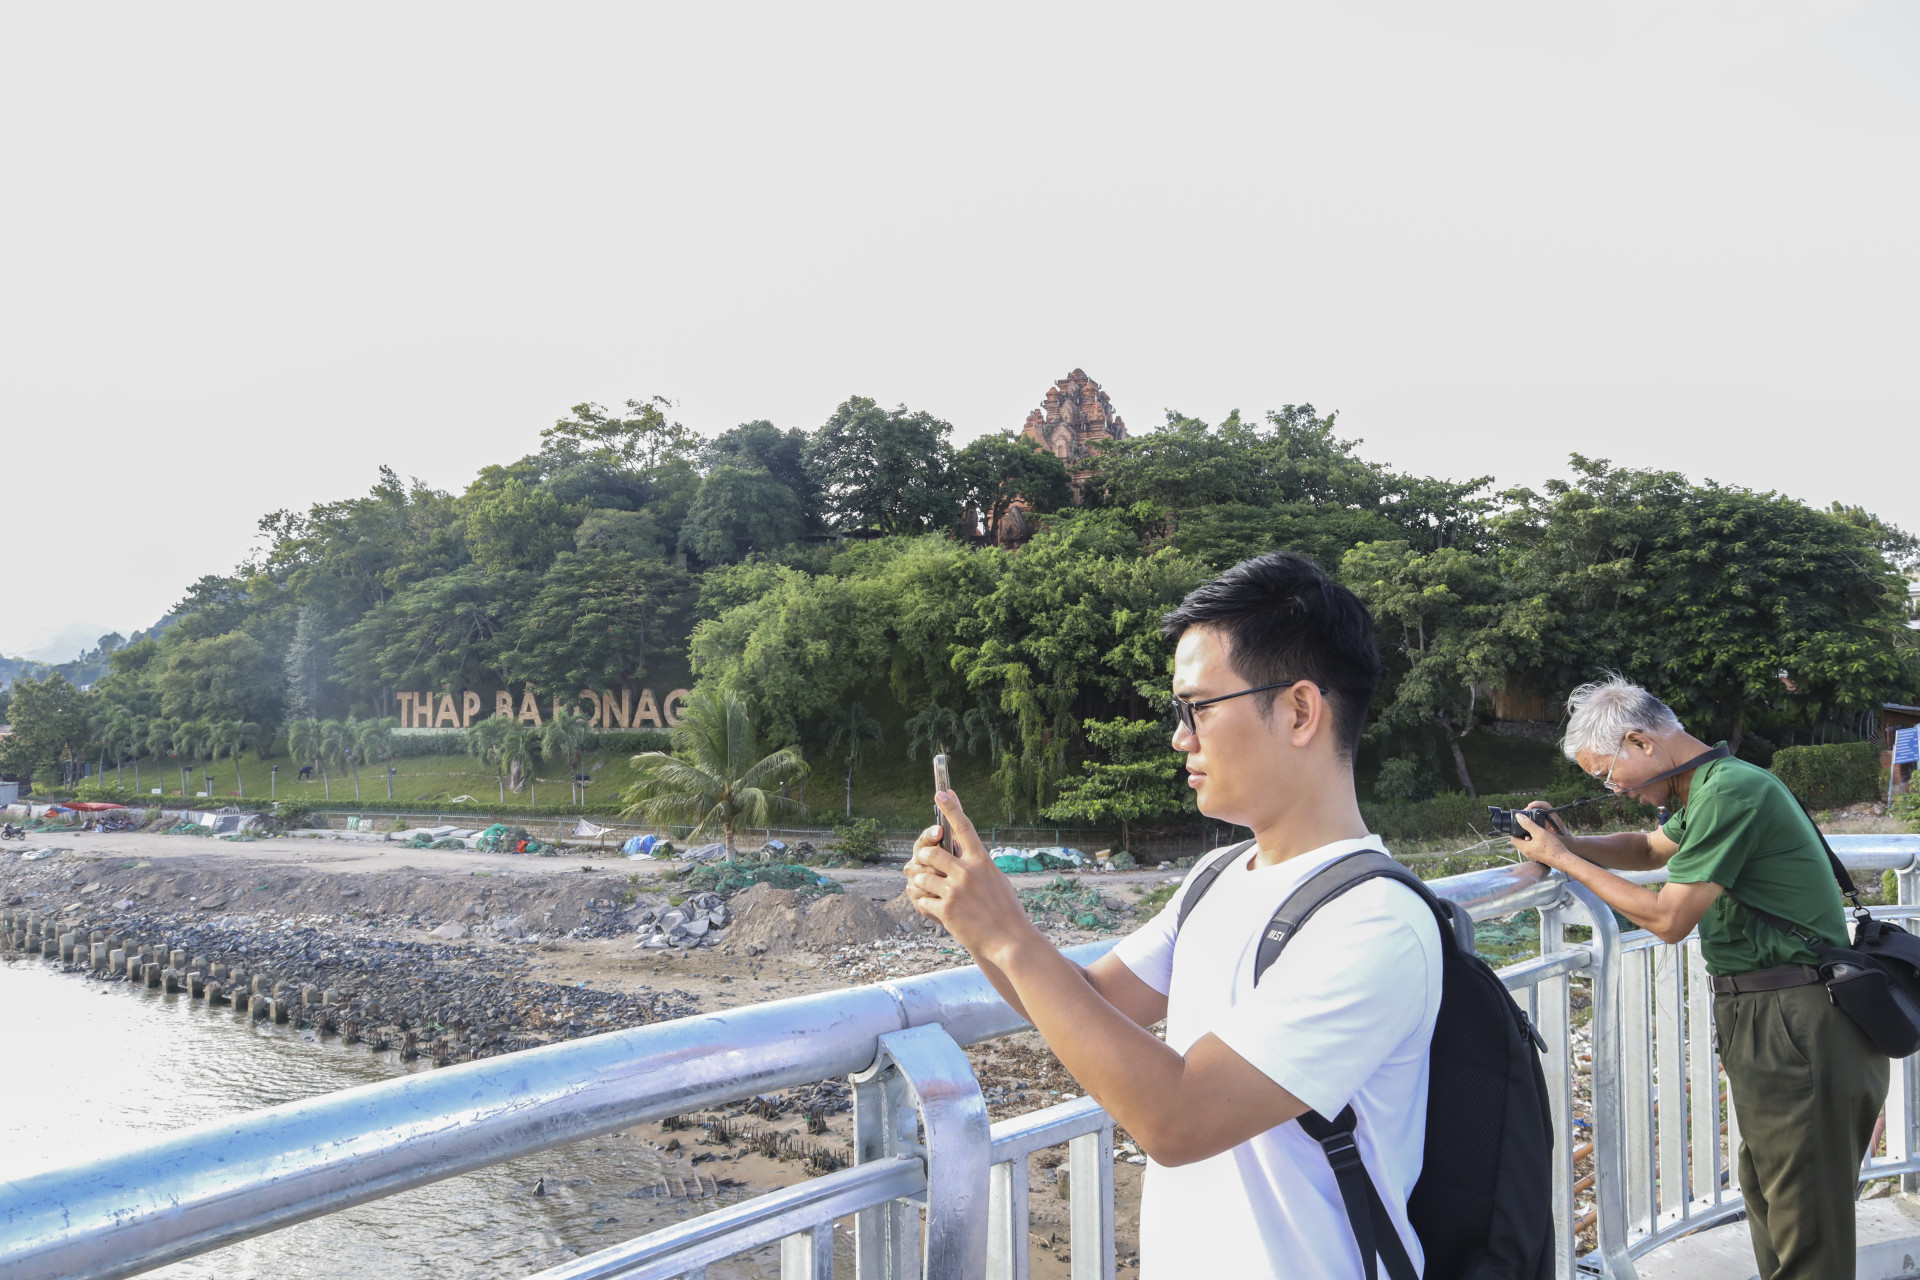 Trên cầu bố trí 6 khu vực (mỗi bên 3 điểm) để người dân, du khách có thể đứng chụp hình, ngắm cảnh.